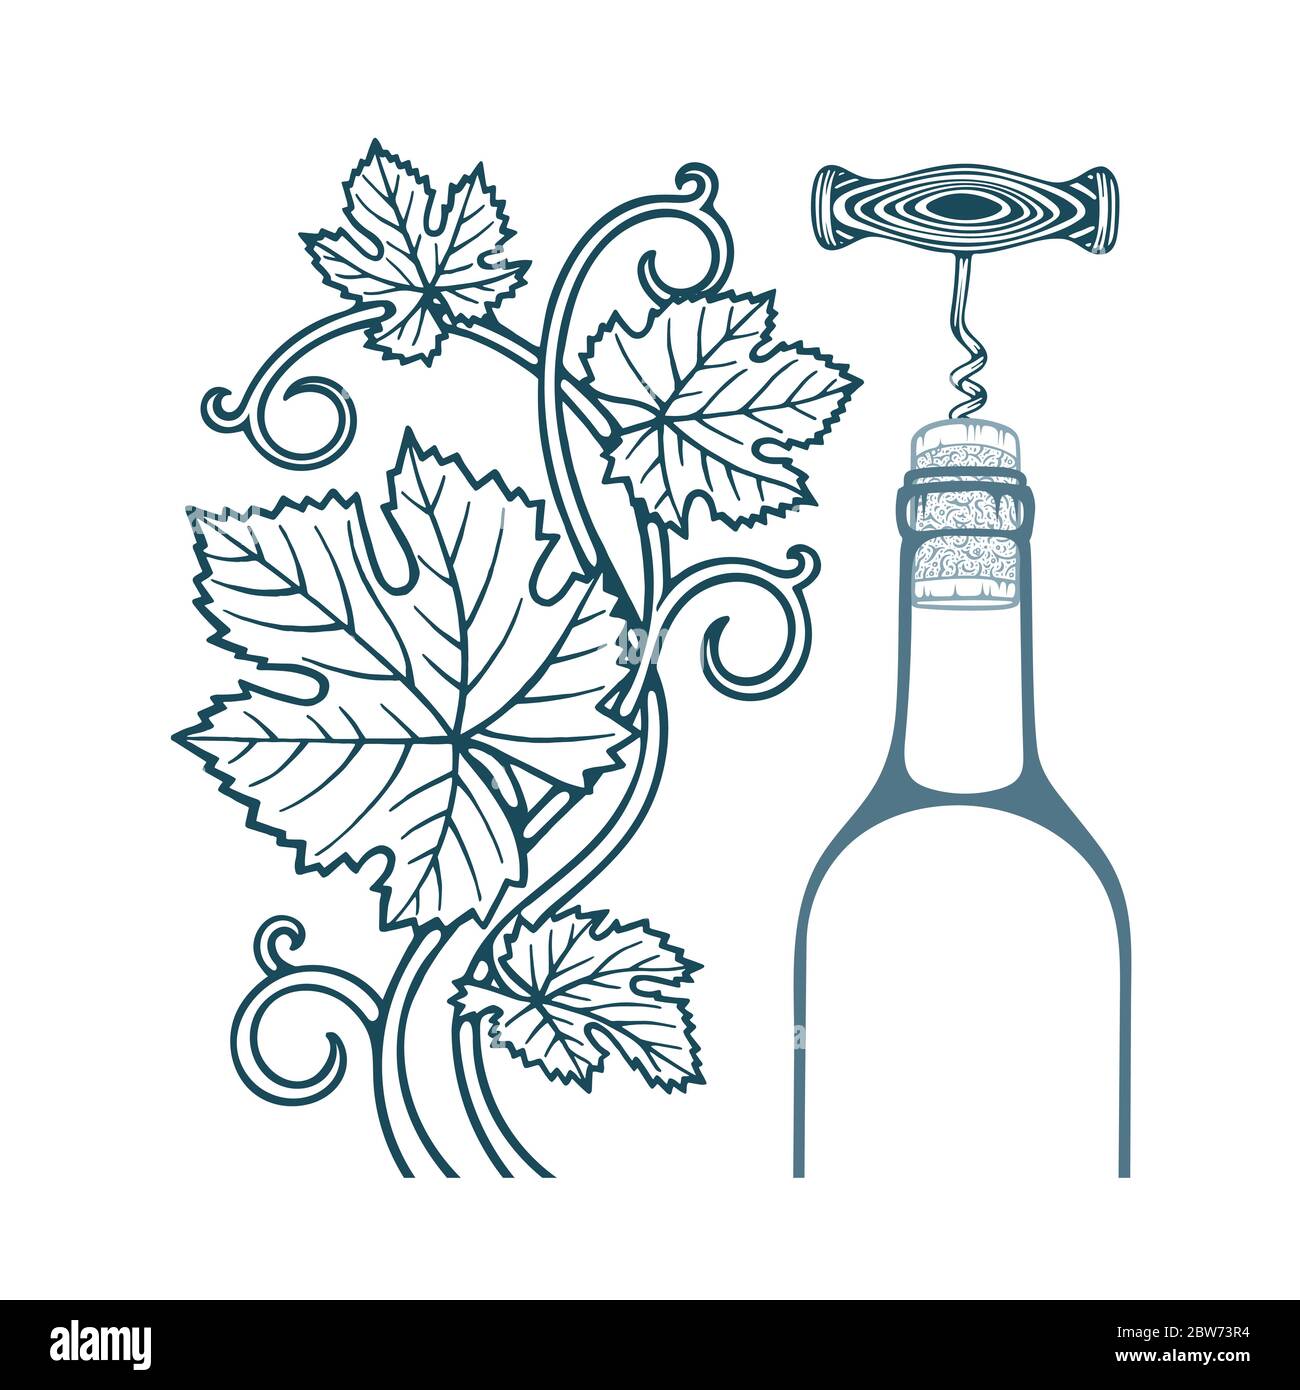 Illustrazione di vite e foglie di uva, cavatappi, sughero e bottiglia di vino. Parte del set. Illustrazione Vettoriale